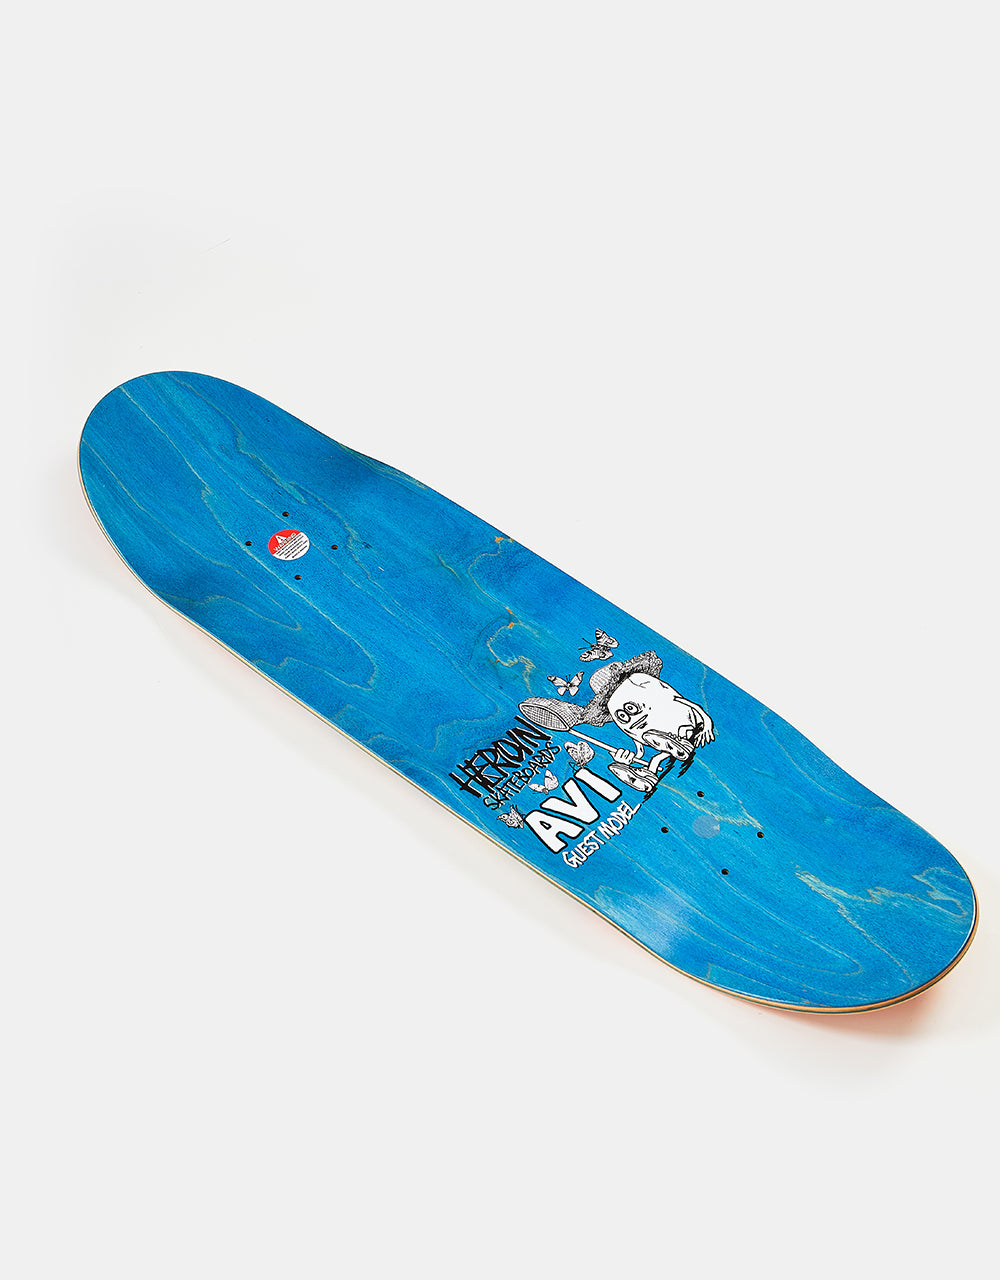 Heroin Avi Guest Egg Skateboard Deck - 8.8”